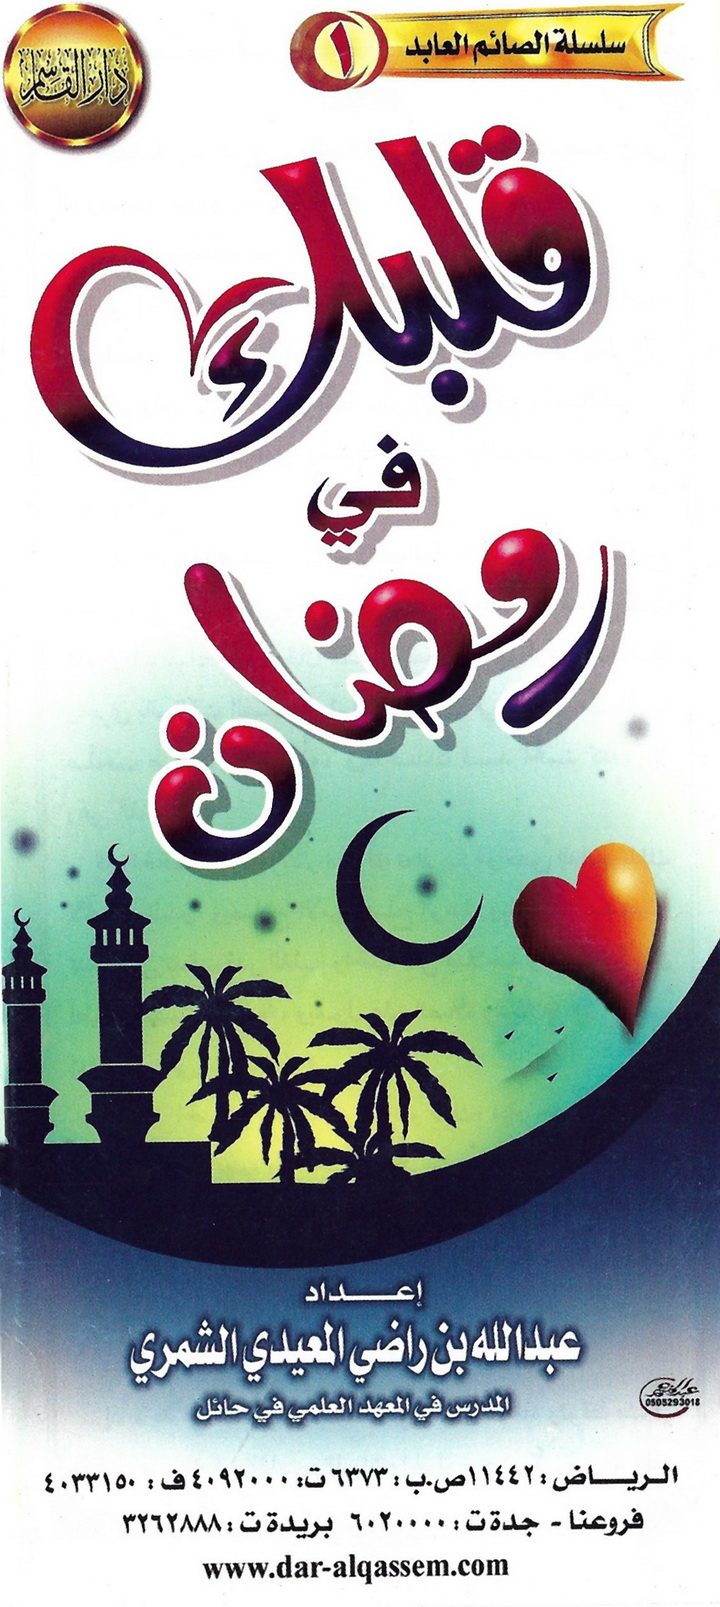 قلبك في رمضان (عبد الله بن راضي المعيدي الشمري – دار القاسم)